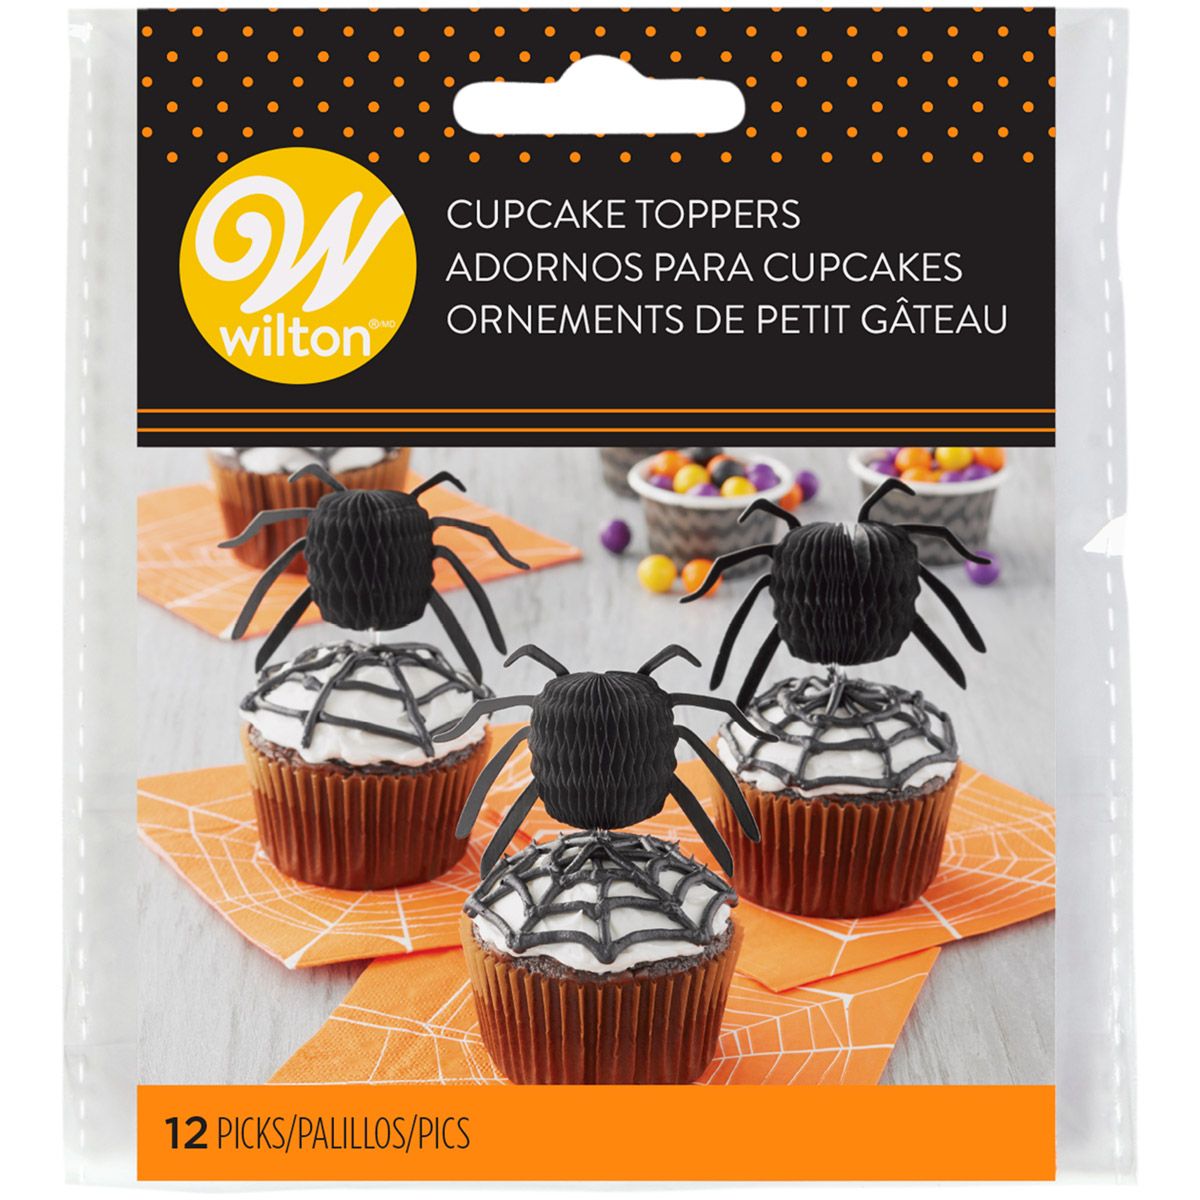 Cupcake toppers i form av svarta spindlar, fästa på muffins dekorerade med spindelnät